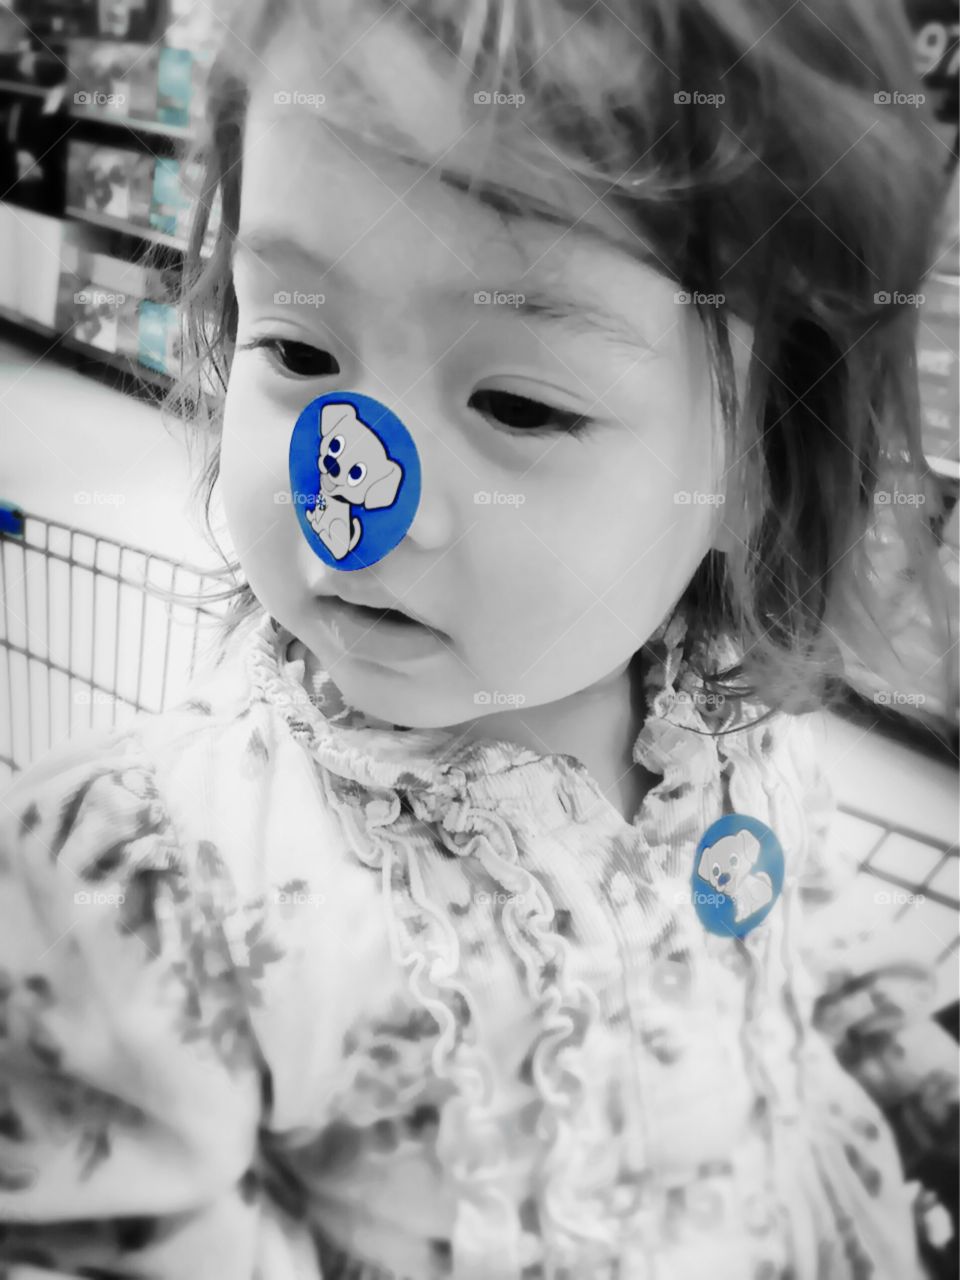 My baby :) at Walmart 